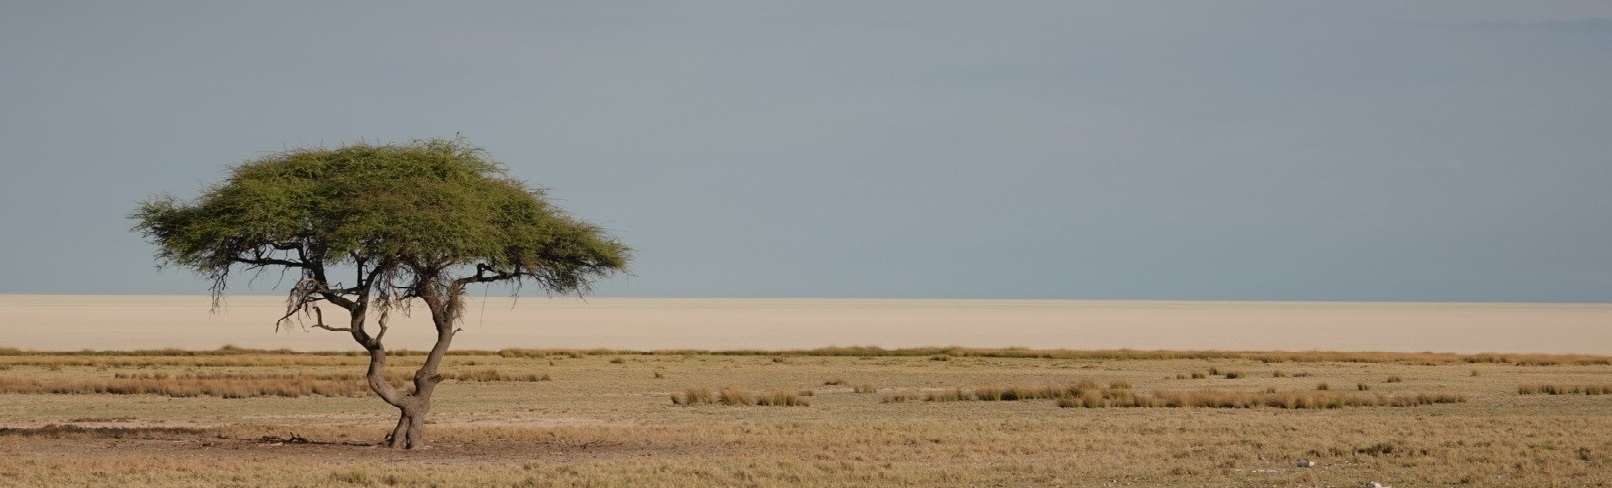 paysage namibie 1 MODIF 2.jpg